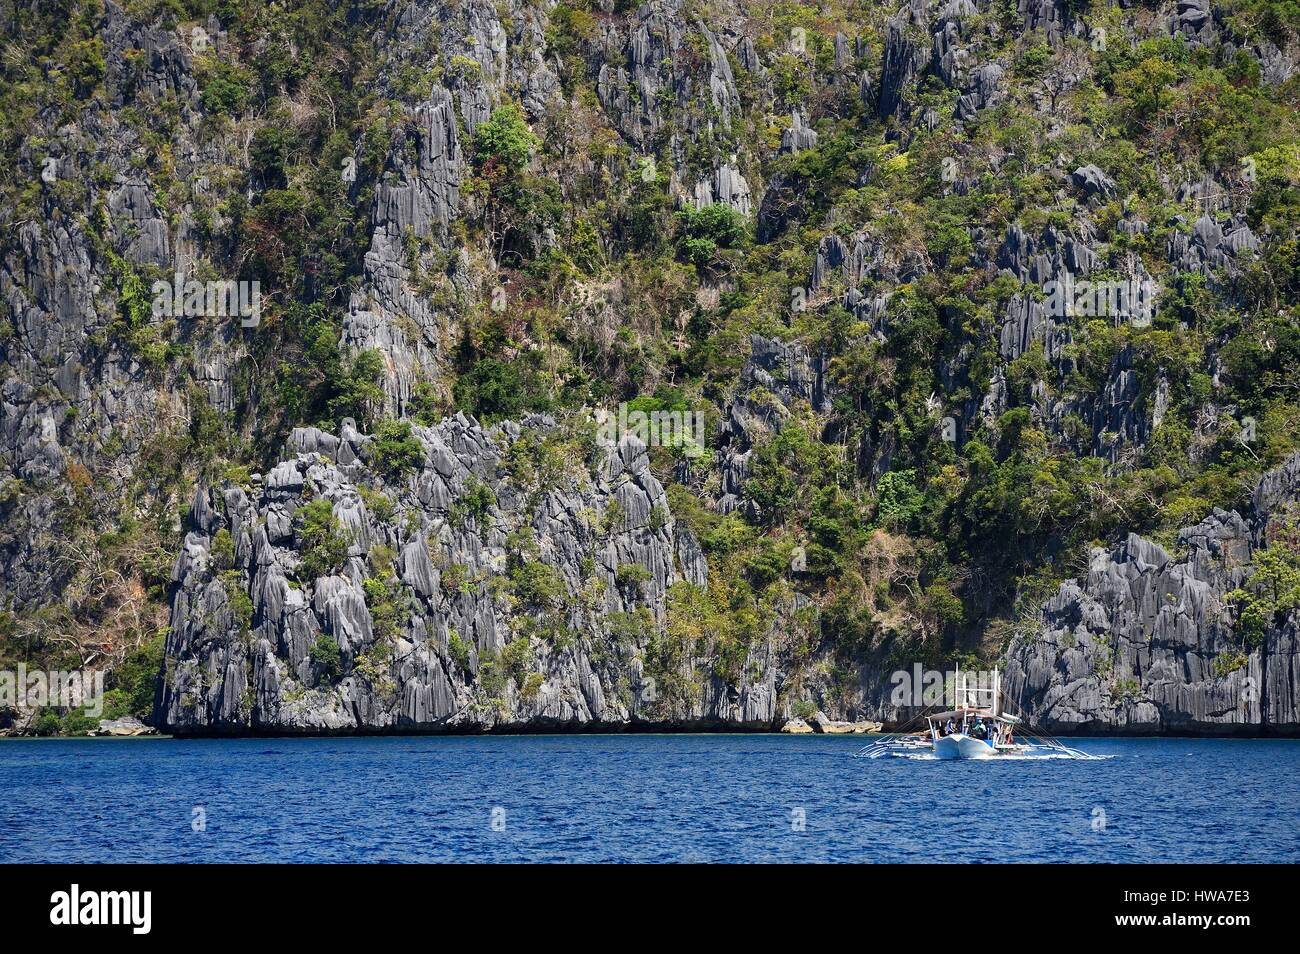 Philippines, Îles Calamian dans le nord de Palawan, l'Île Coron zone biotique naturel, pirogue sous murs géants de falaises calcaires Banque D'Images